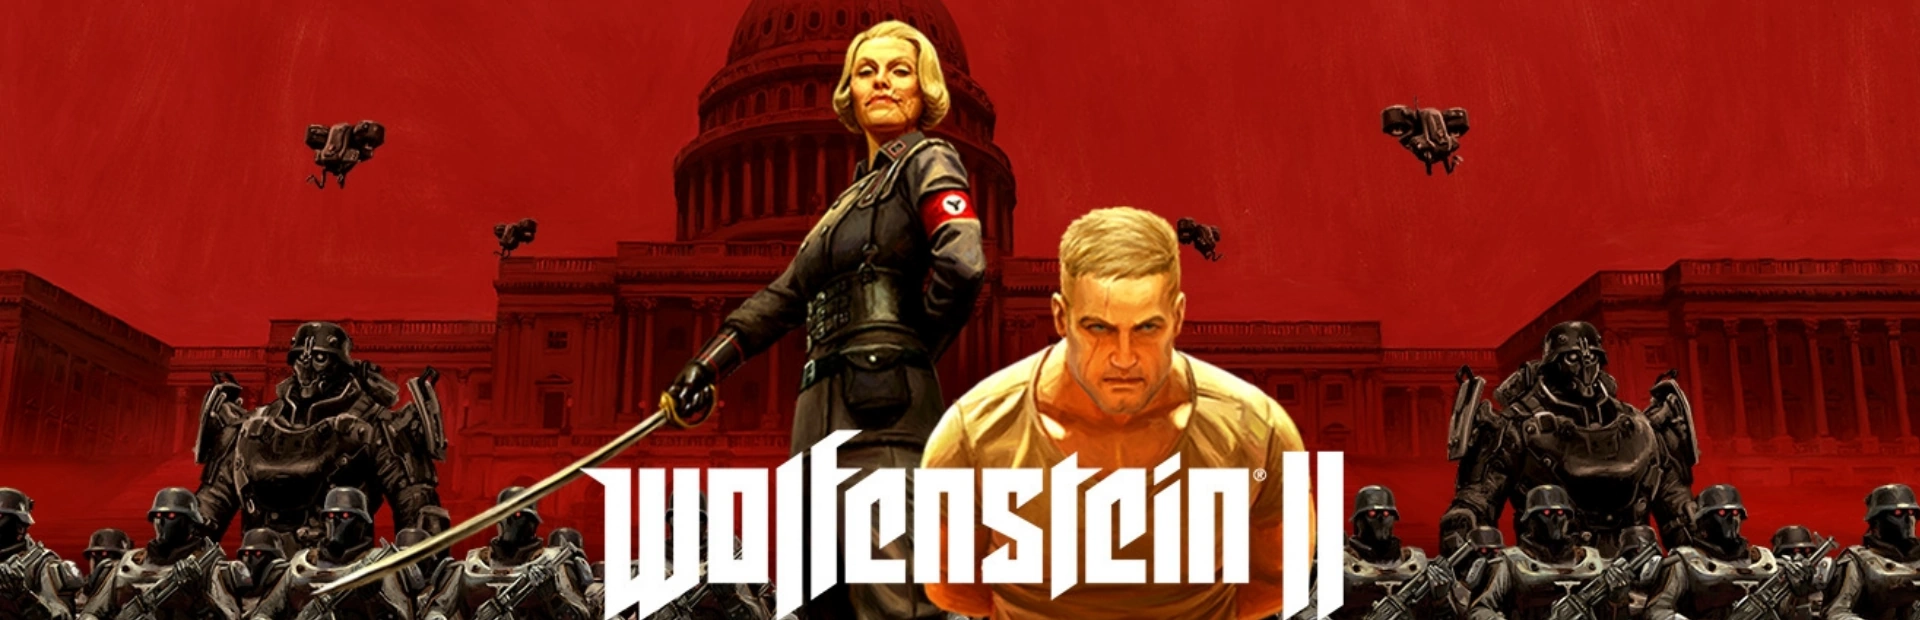 Wolfenstein.II .The .New .Colossus.banner2